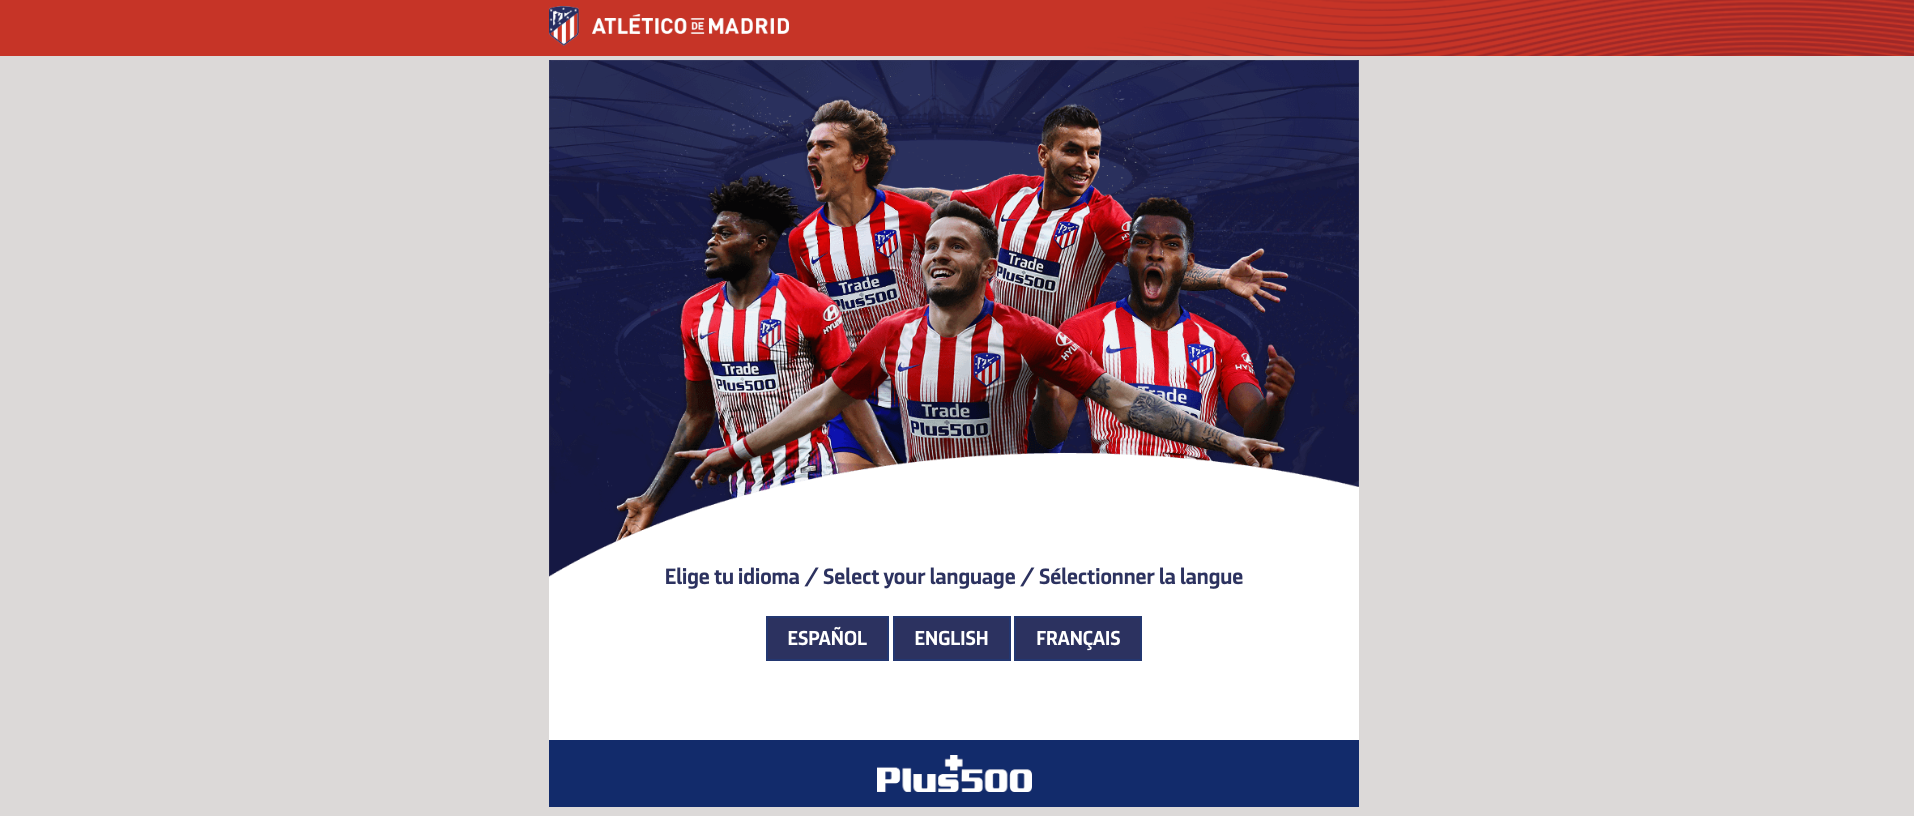 atletico-de-madrid-campaign-plus500-languages